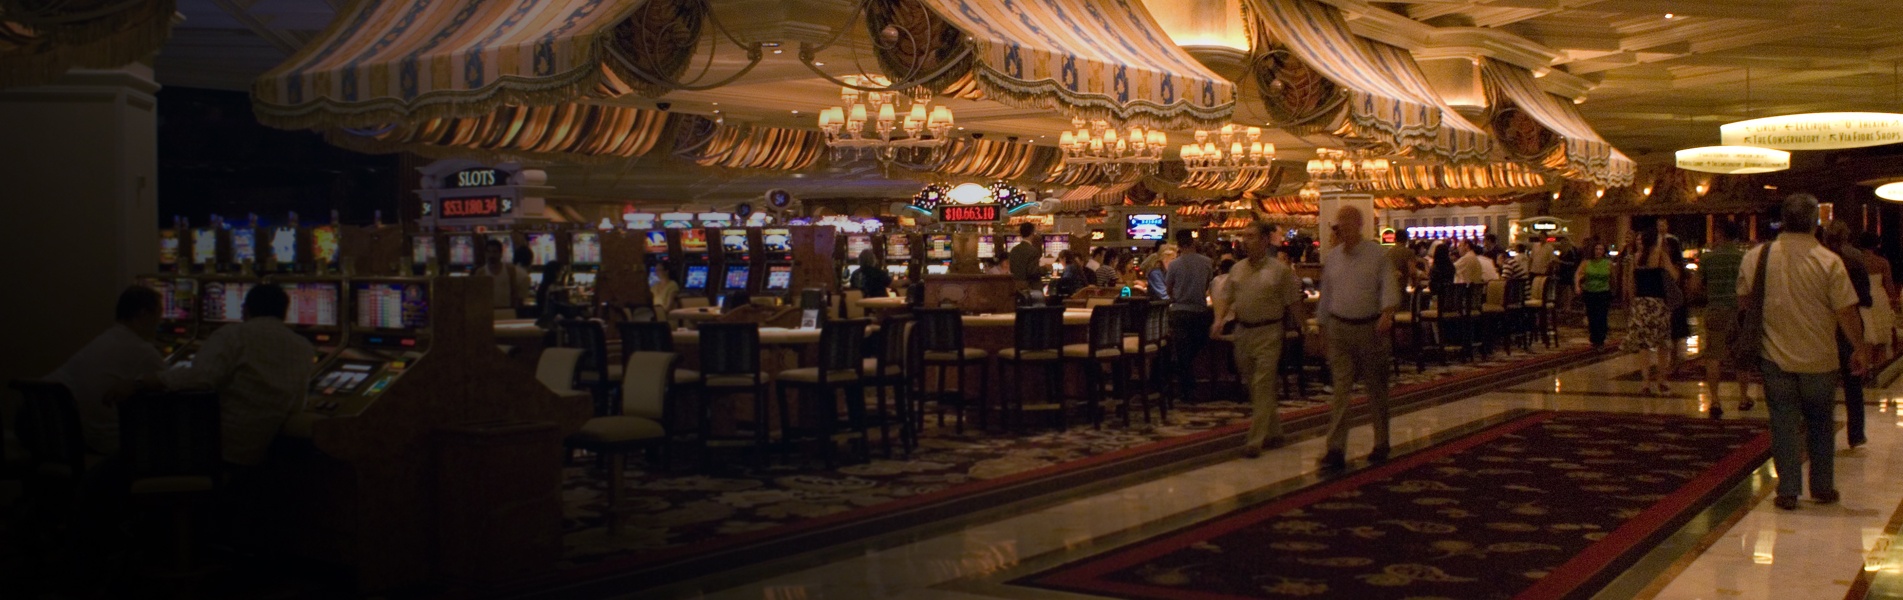 Bellagio Casino Las Vegas 2